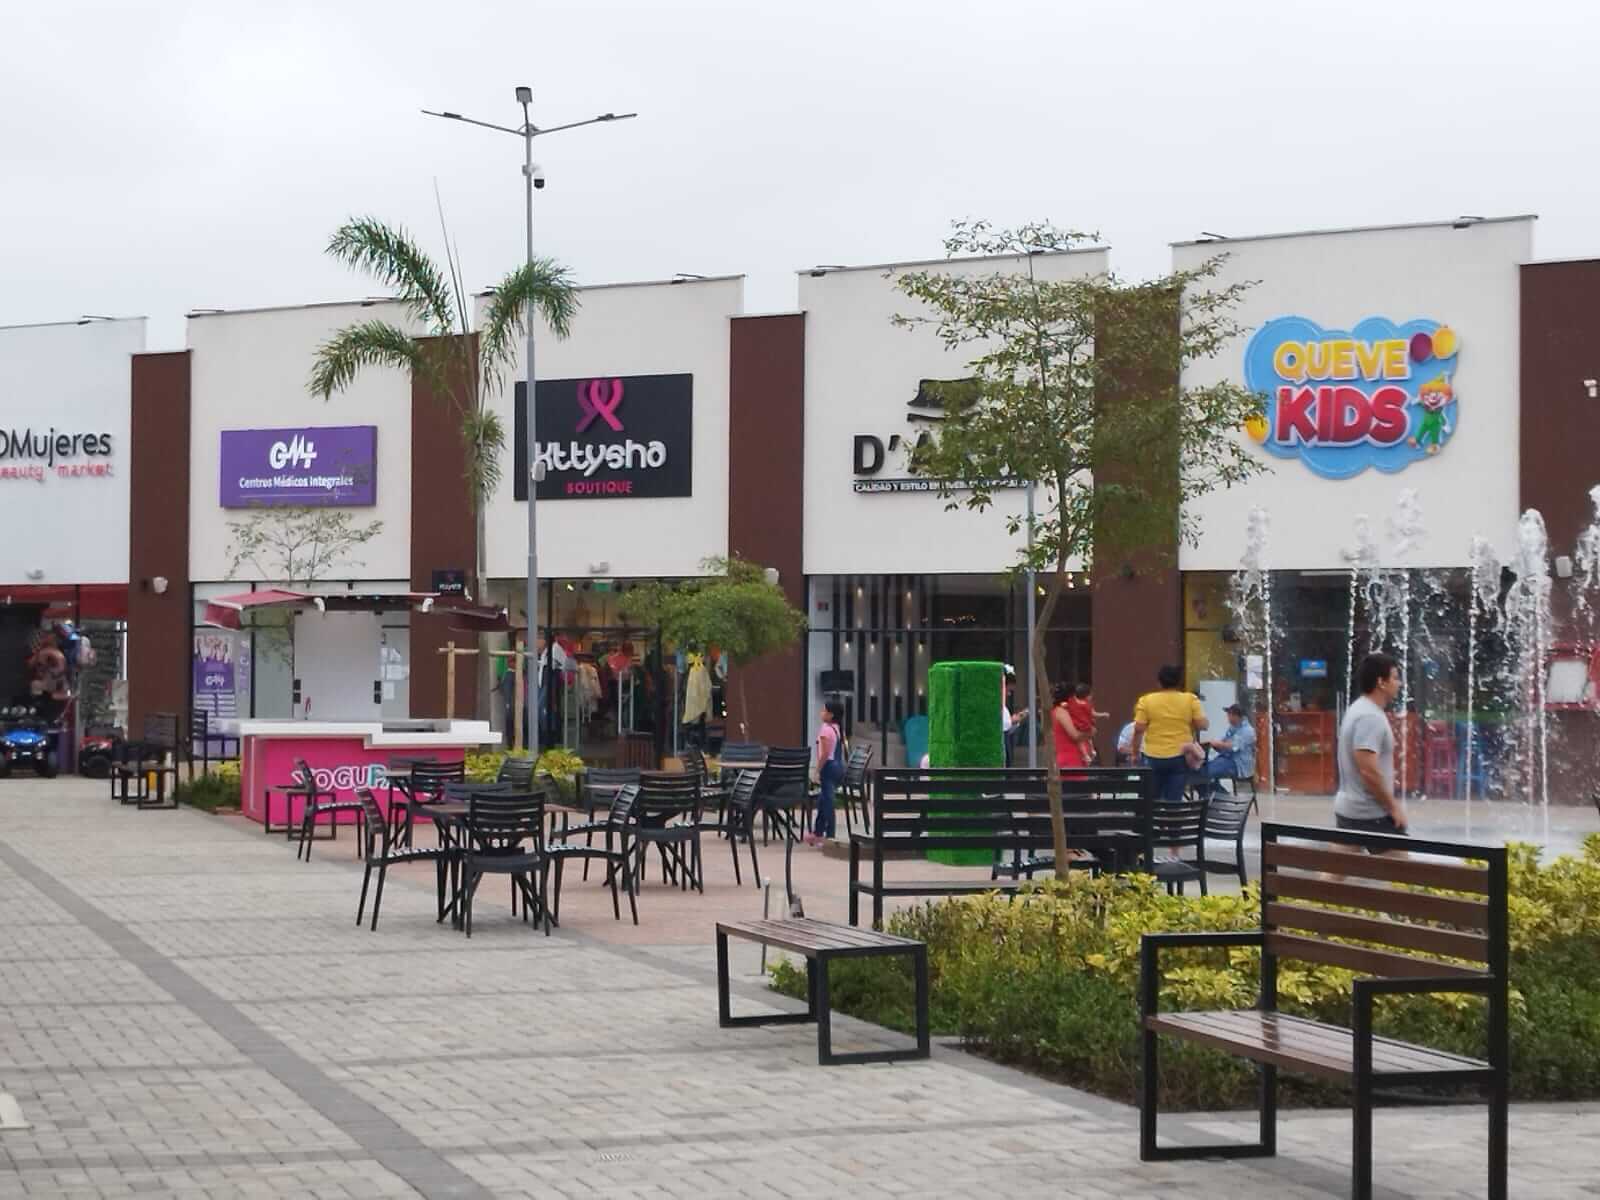  La Plaza la Cuadra de Quevedo, será el sitio donde se desarrollará la feria de exposición de comidas y bebidas.